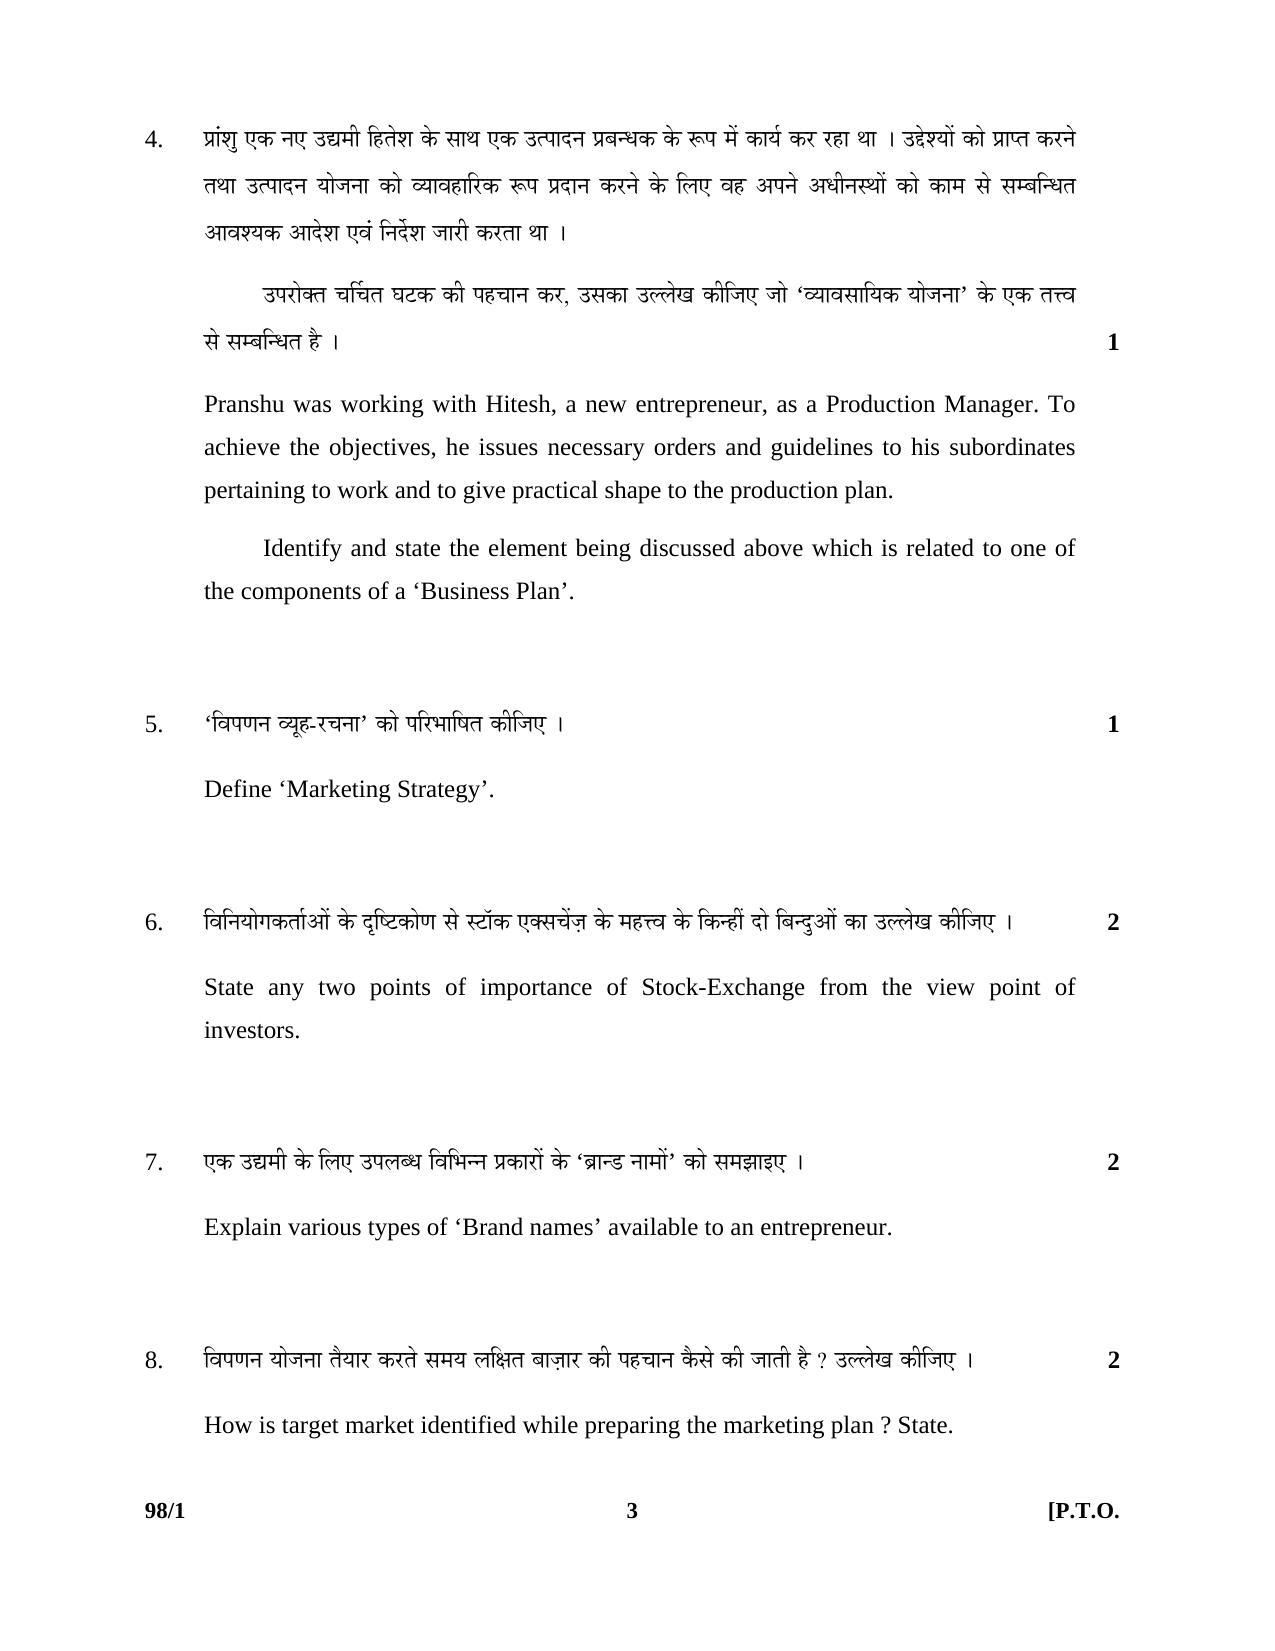 CBSE Class 12 98-1 ENTREPRENEURSHIP 2016 Question Paper - Page 3